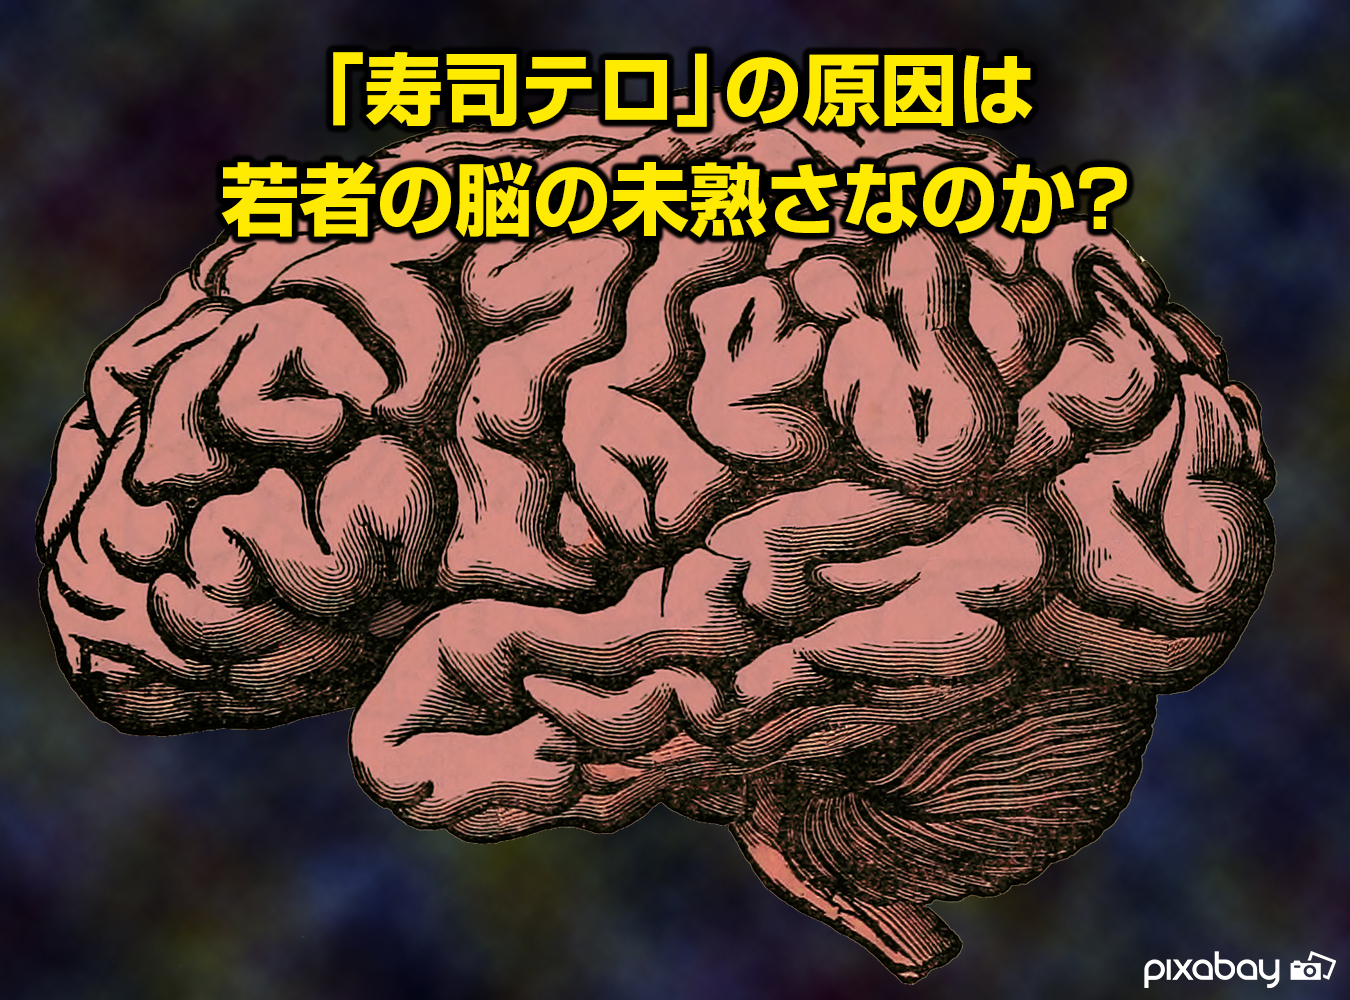 「寿司テロ」の原因は若者の脳の未熟さなのか？